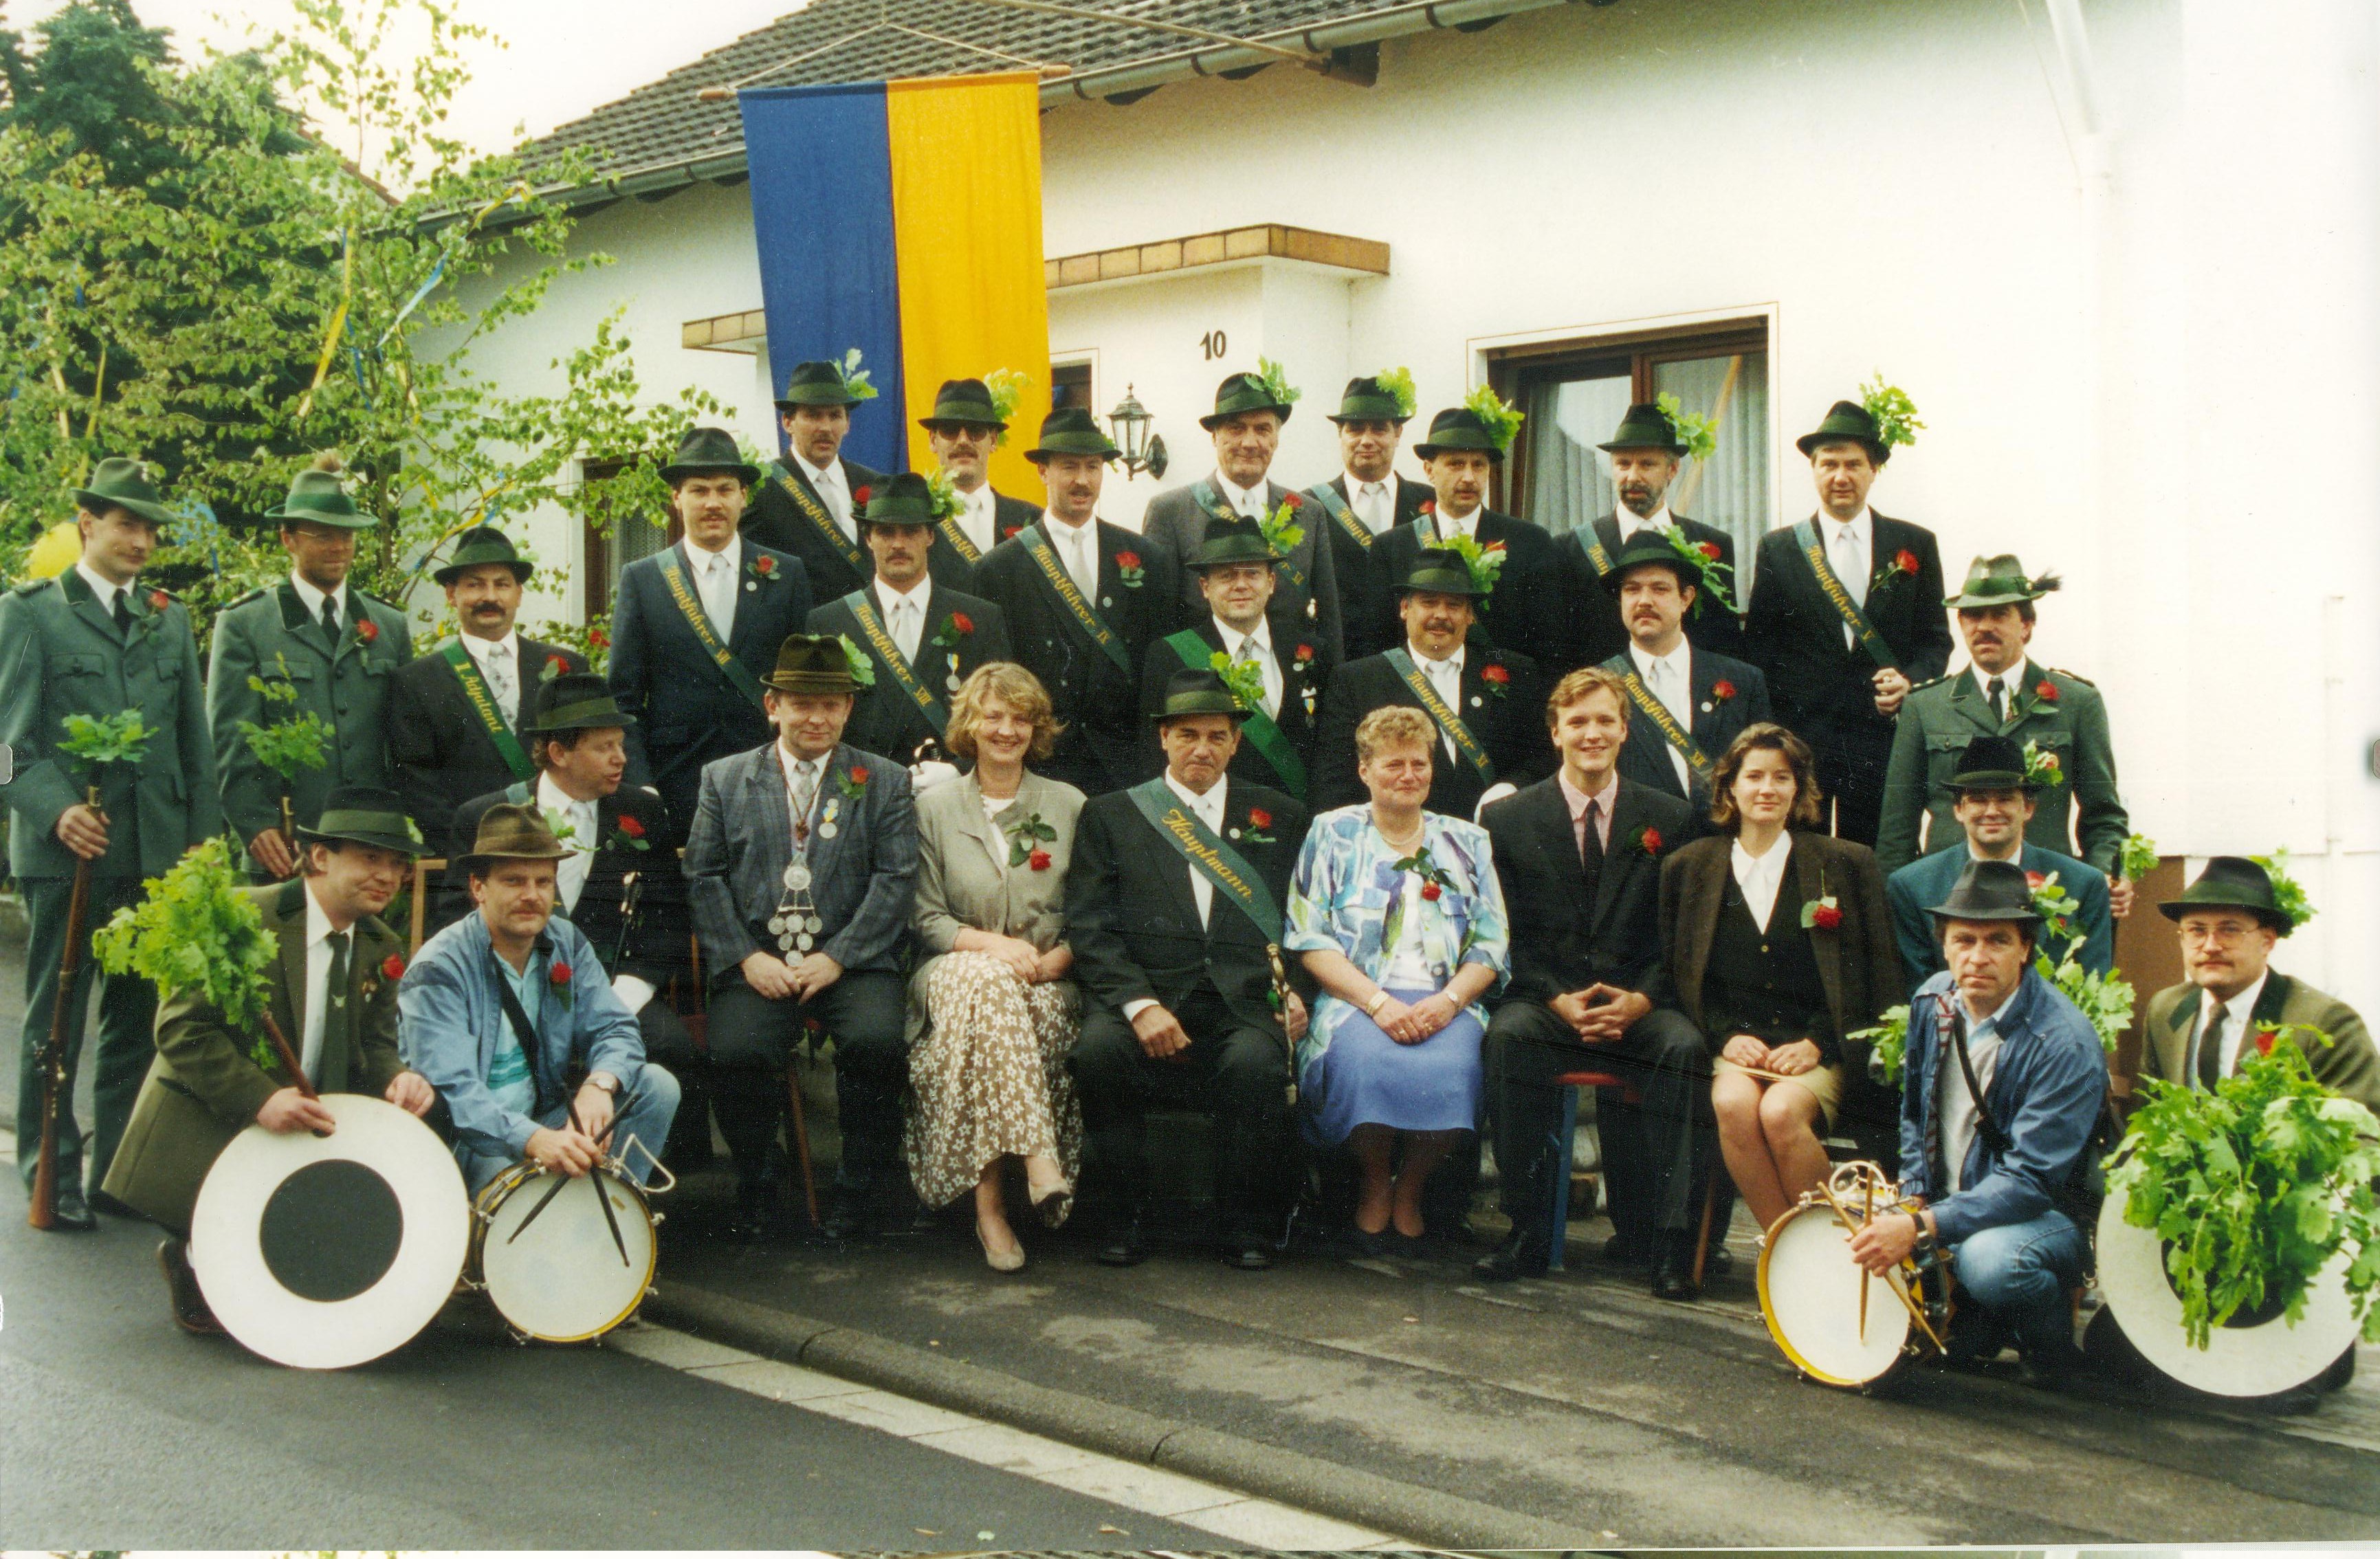 Laubacher Ausschussfest, History 098